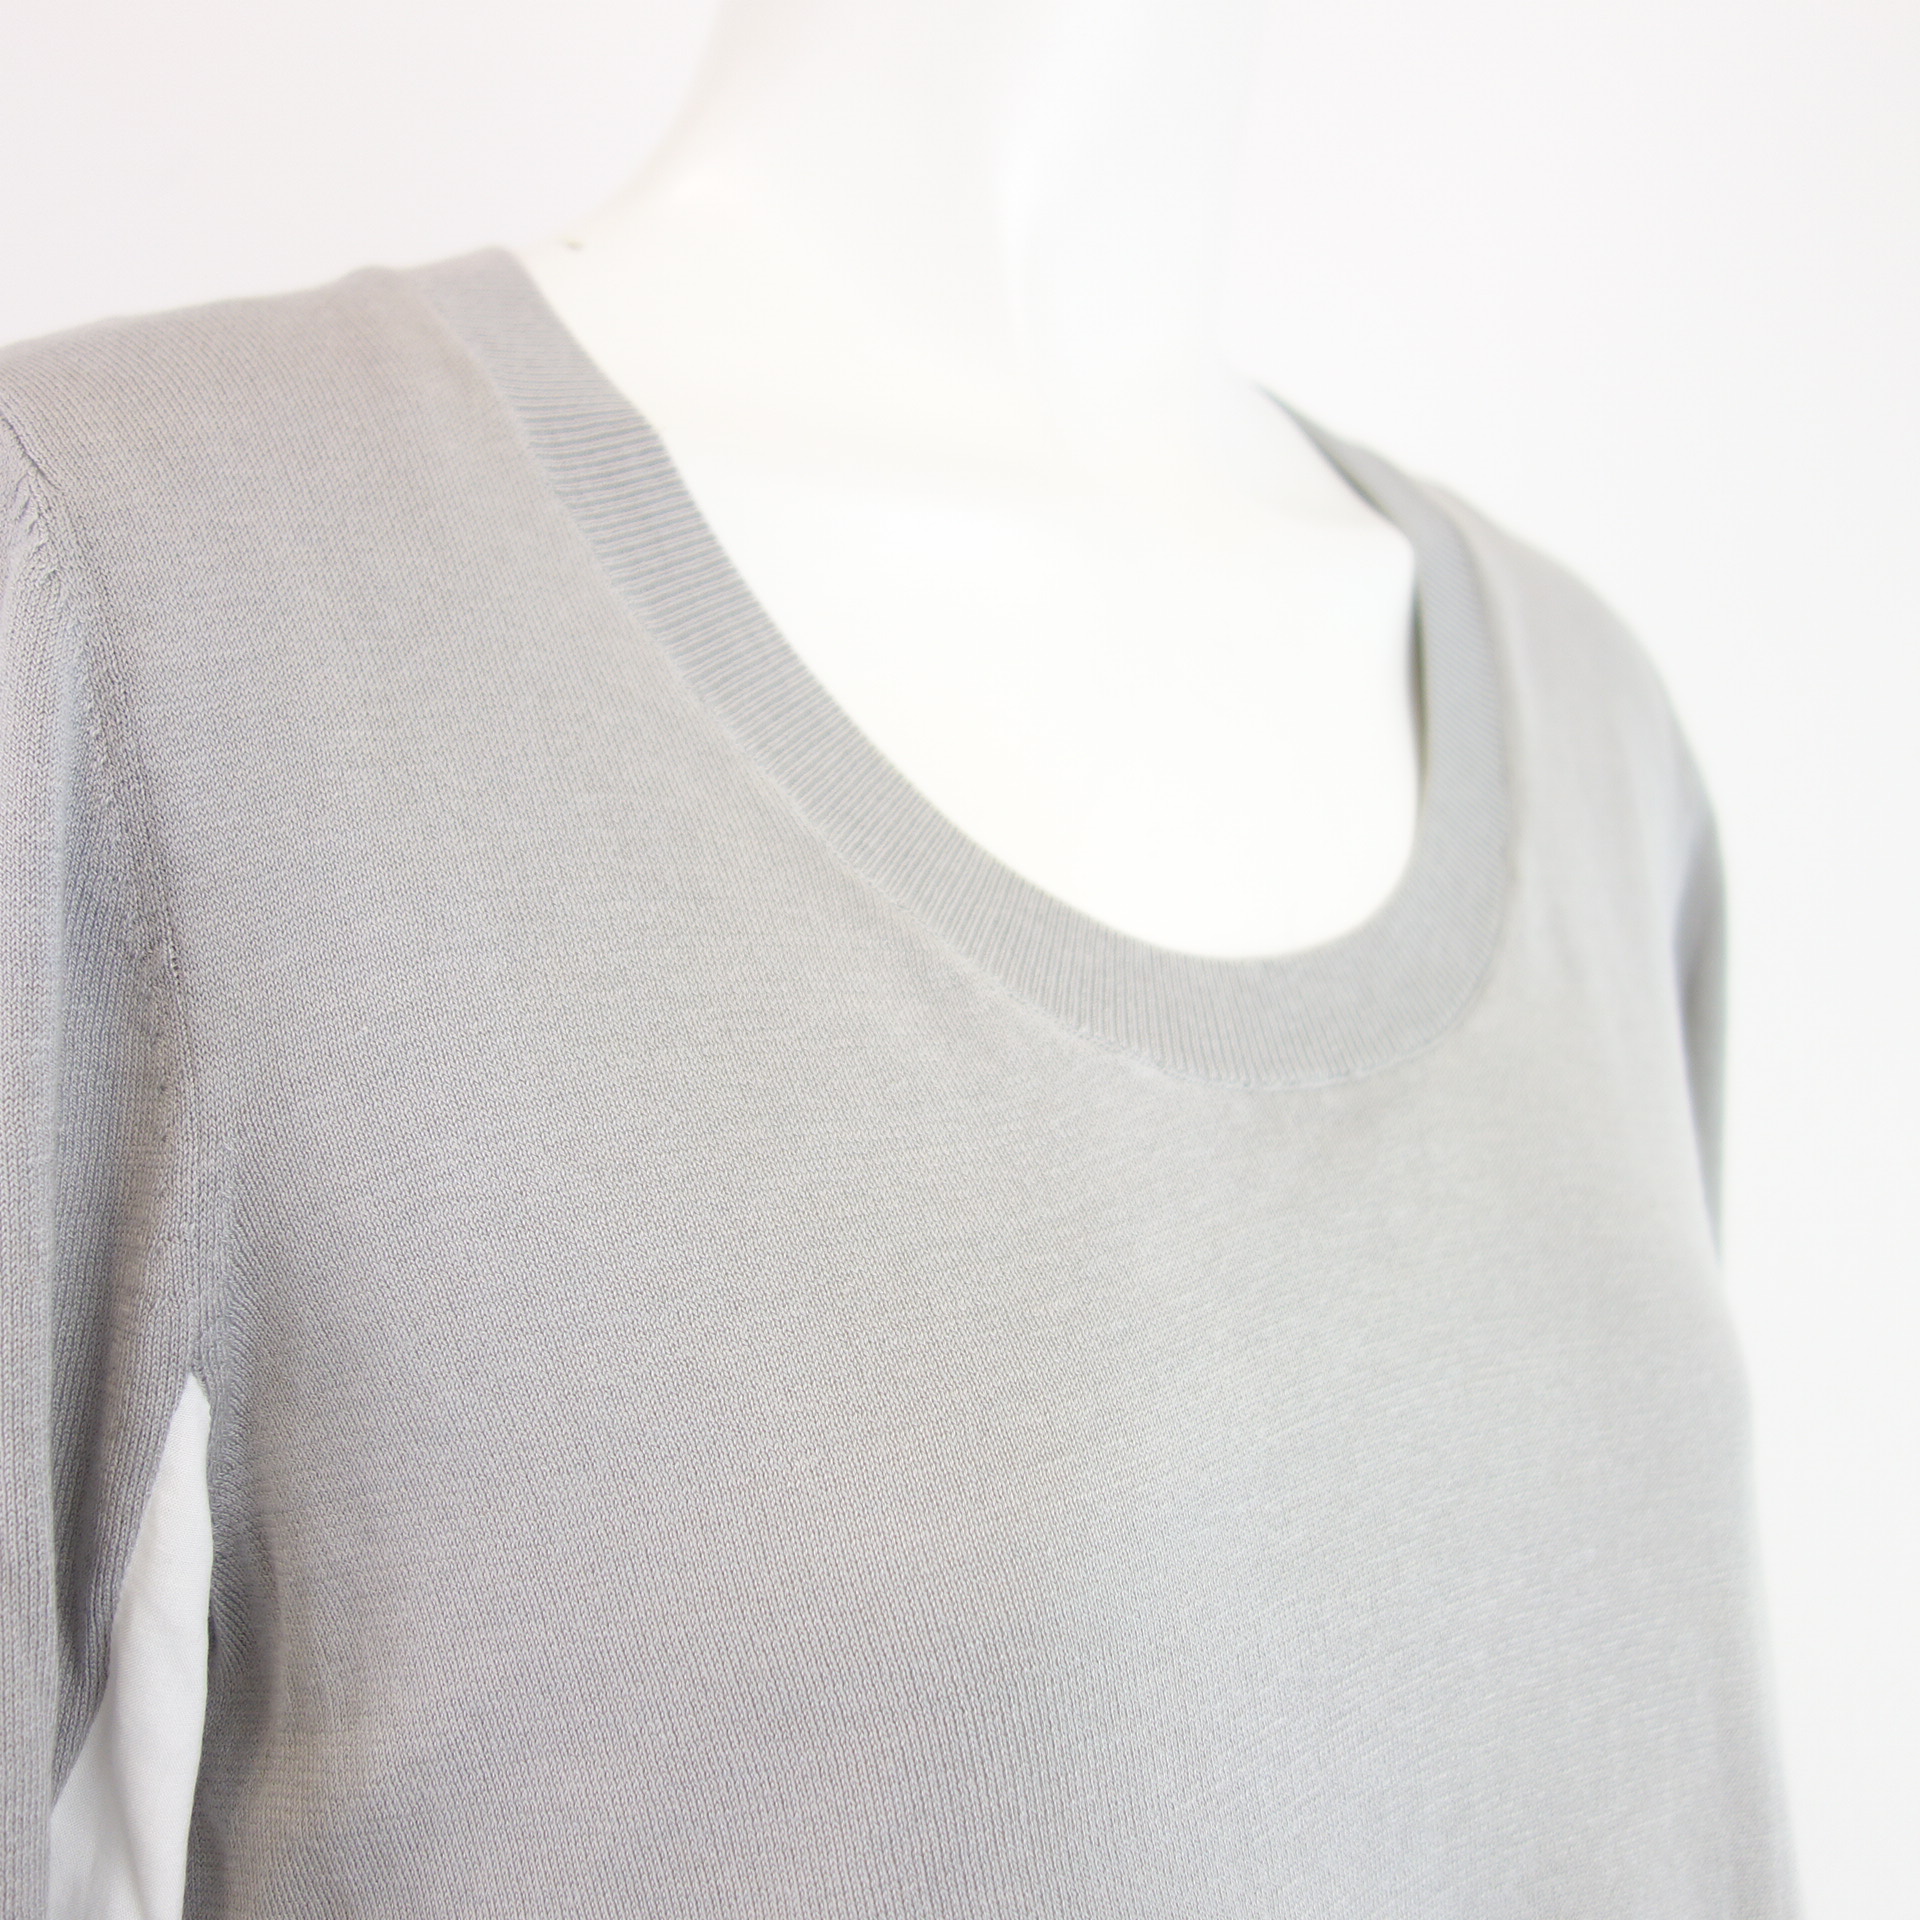 LIEBESKIND Berlin Damen Pullover Shirt Damenpullover 2 in 1 Grau Weiß Größe 34 XS